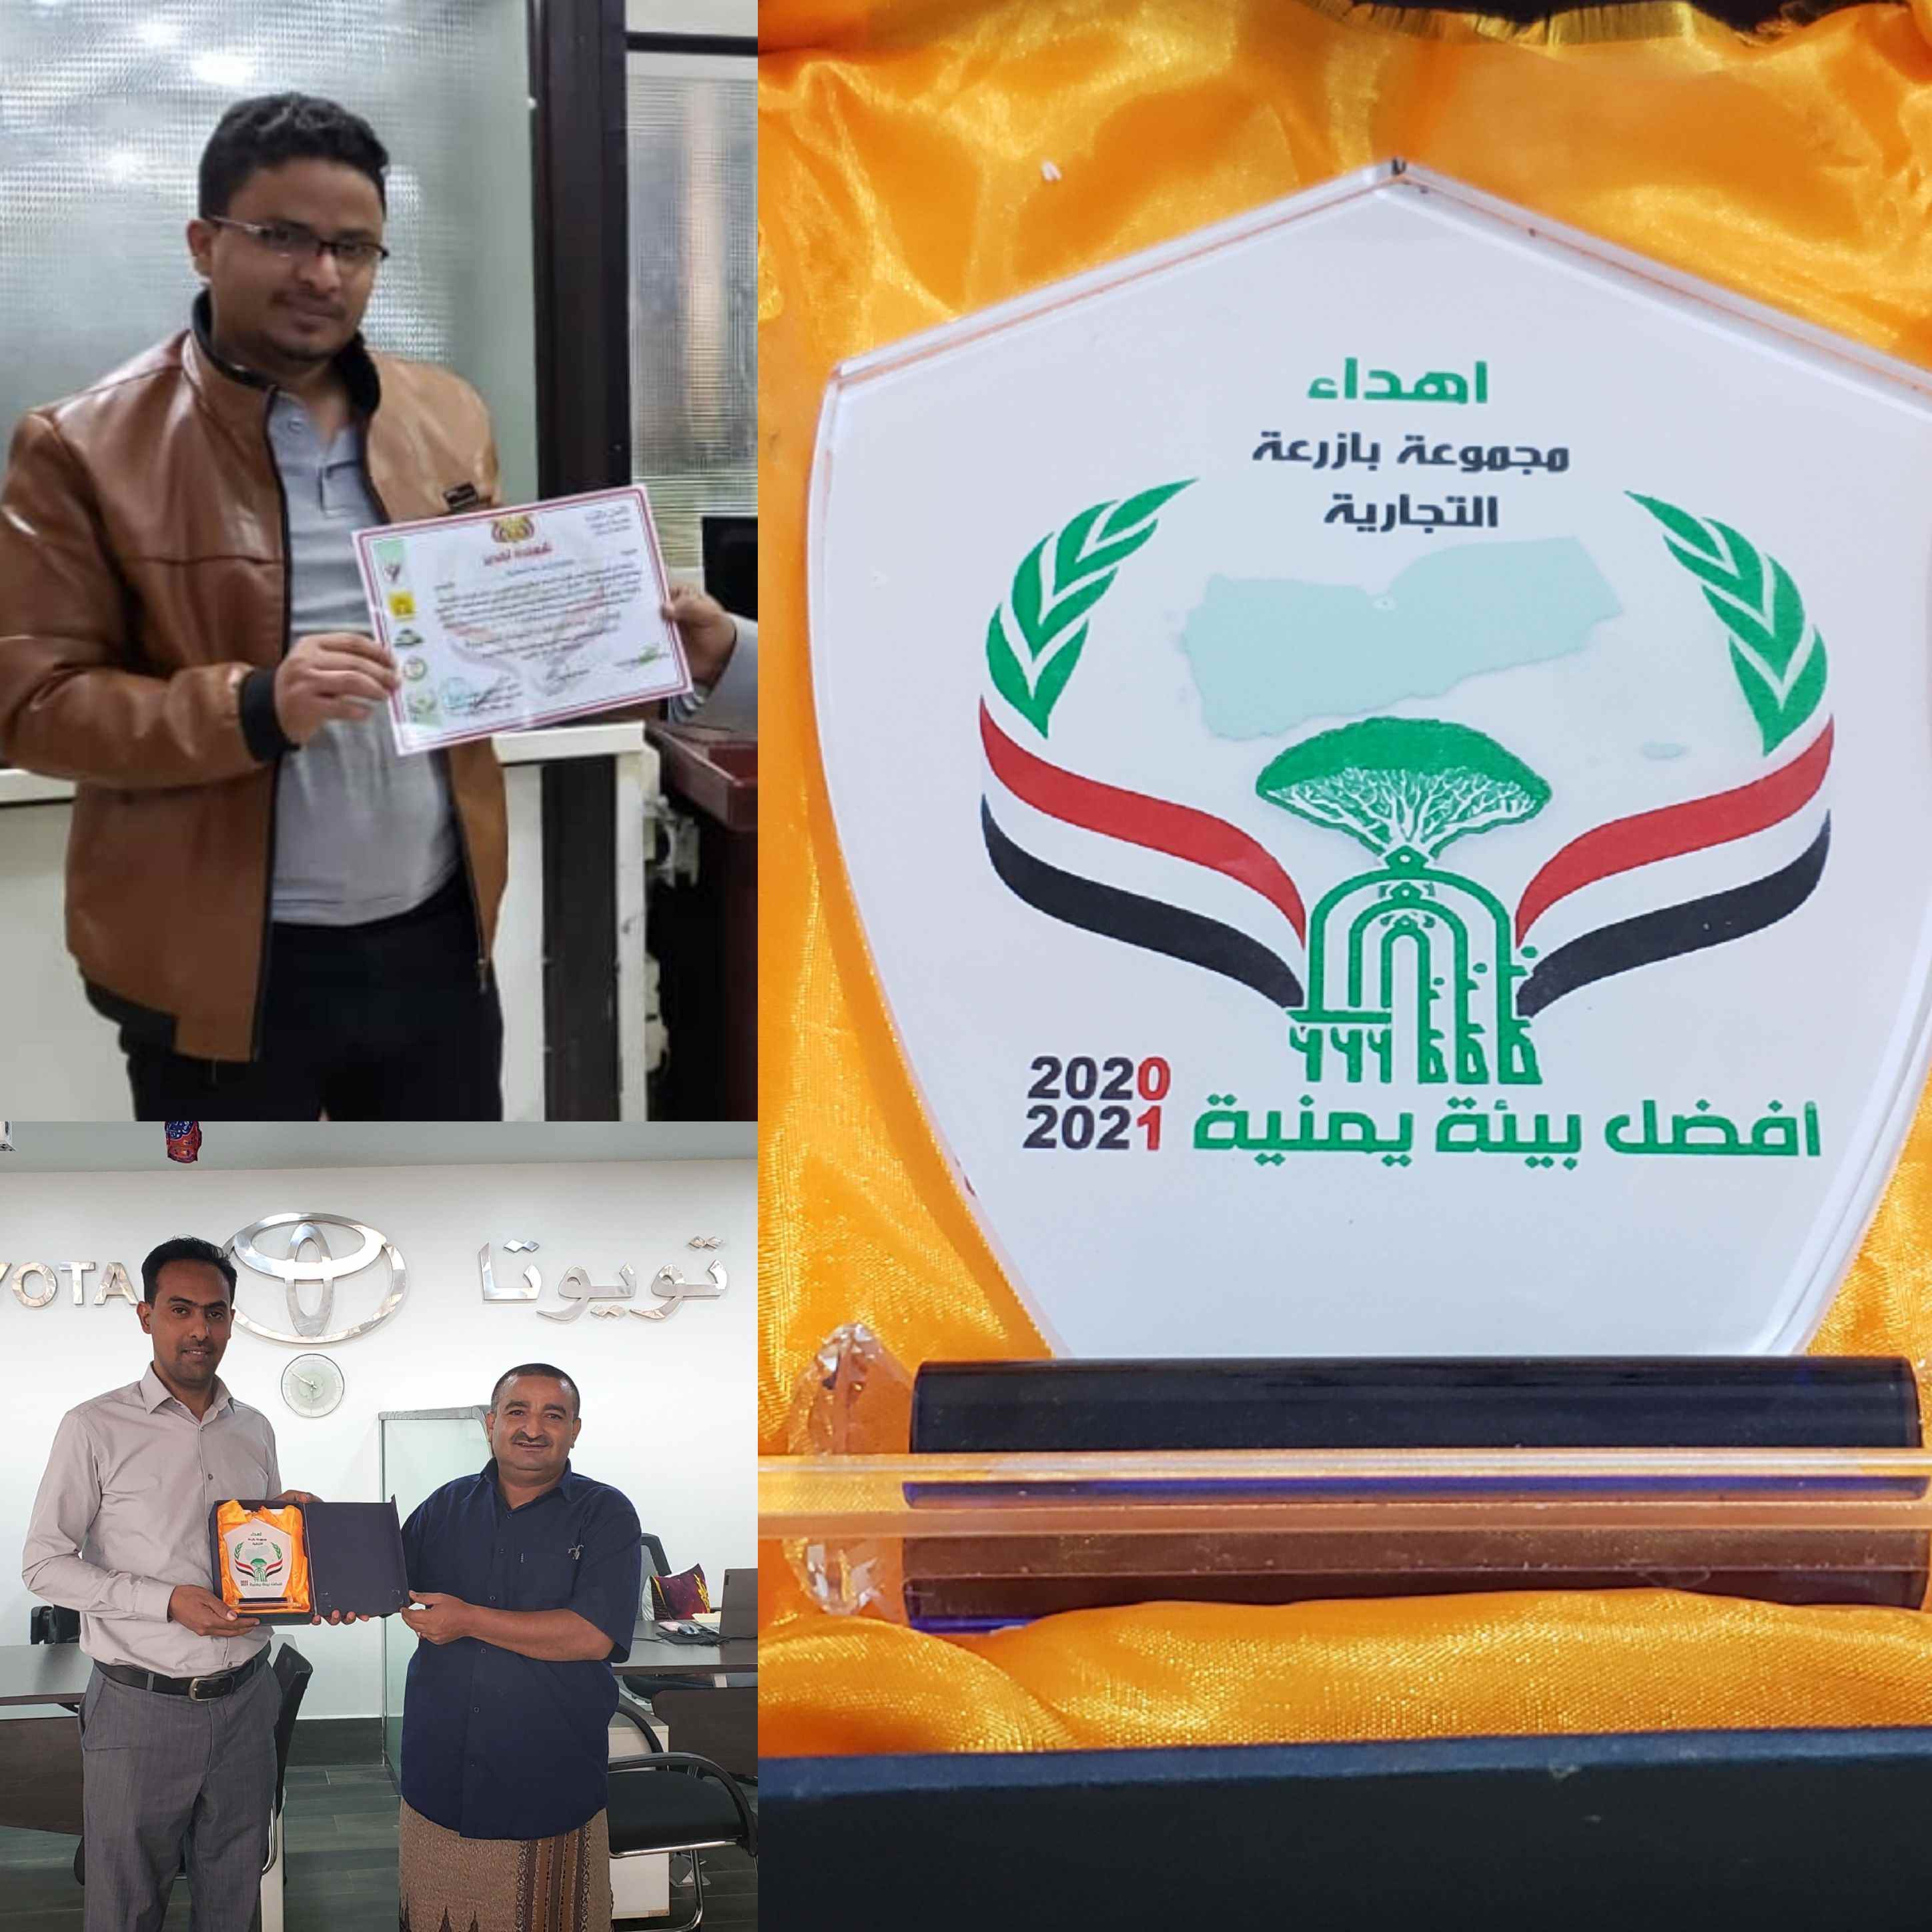 تكريم مجموعة بازرعة والمركز التجاري للسيارات بشهادة ودرع أفضل بيئة تجارية يمنية ..!!